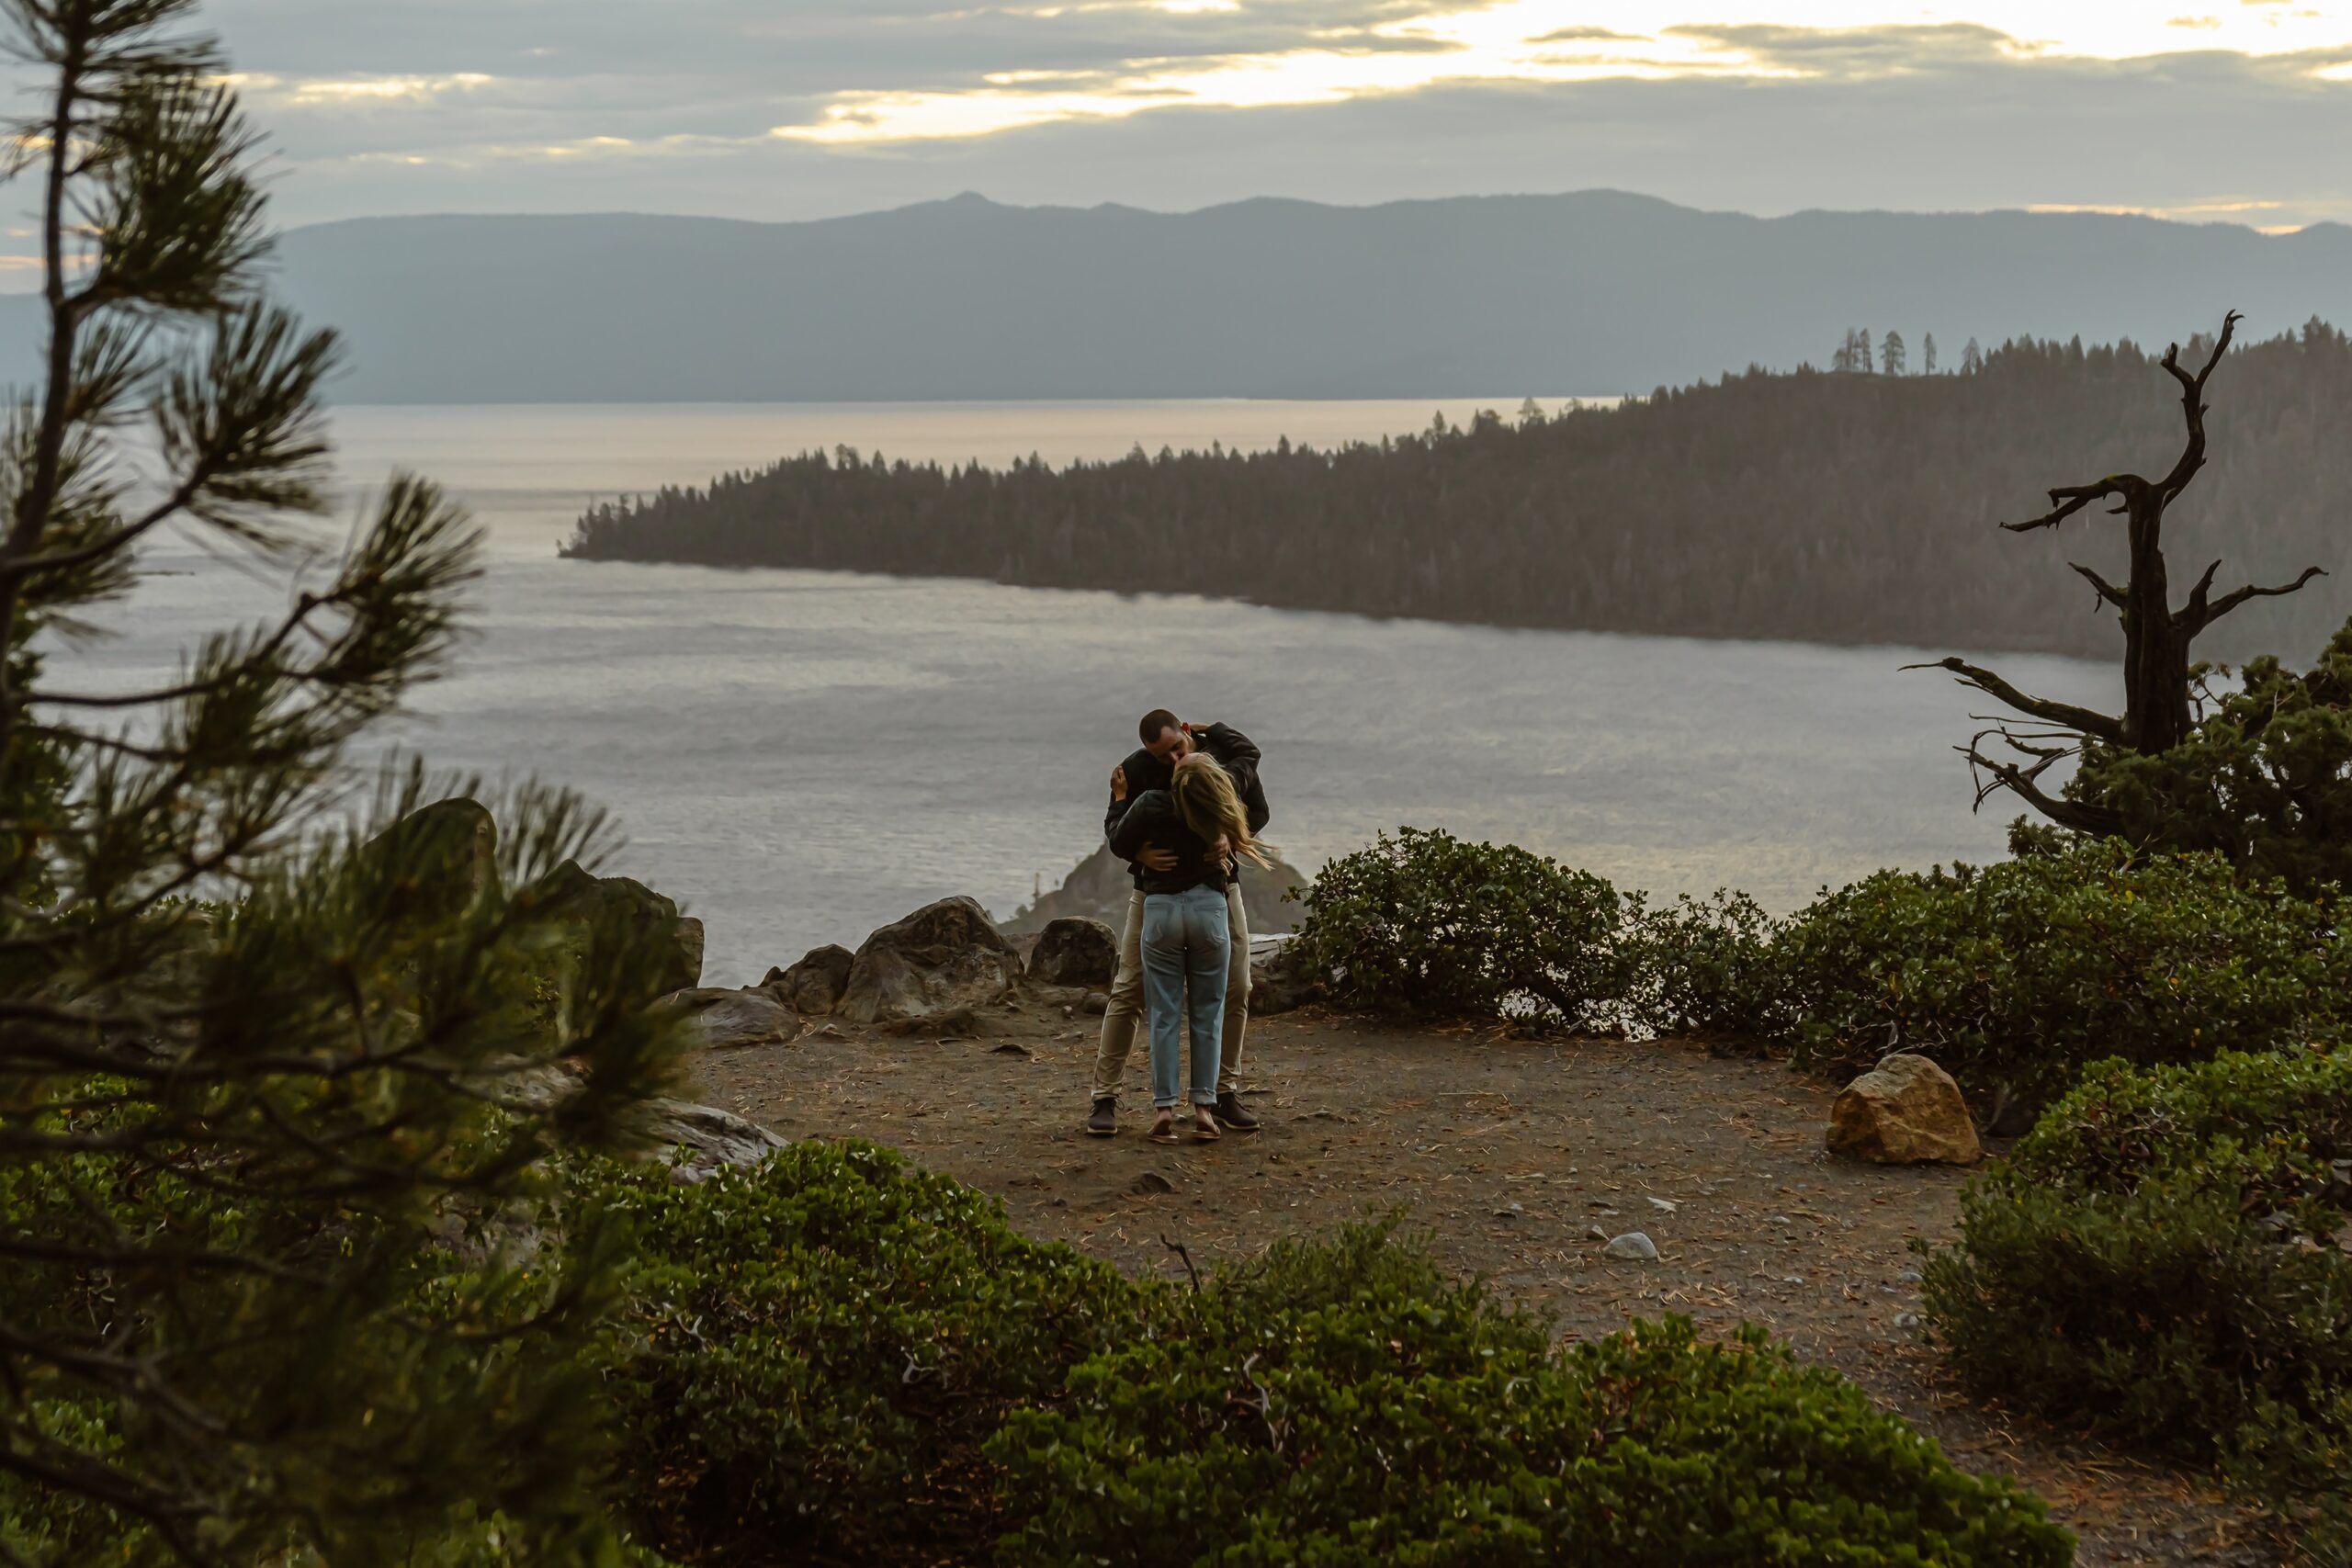 Man and woman hug with Lake Tahoe backdrop